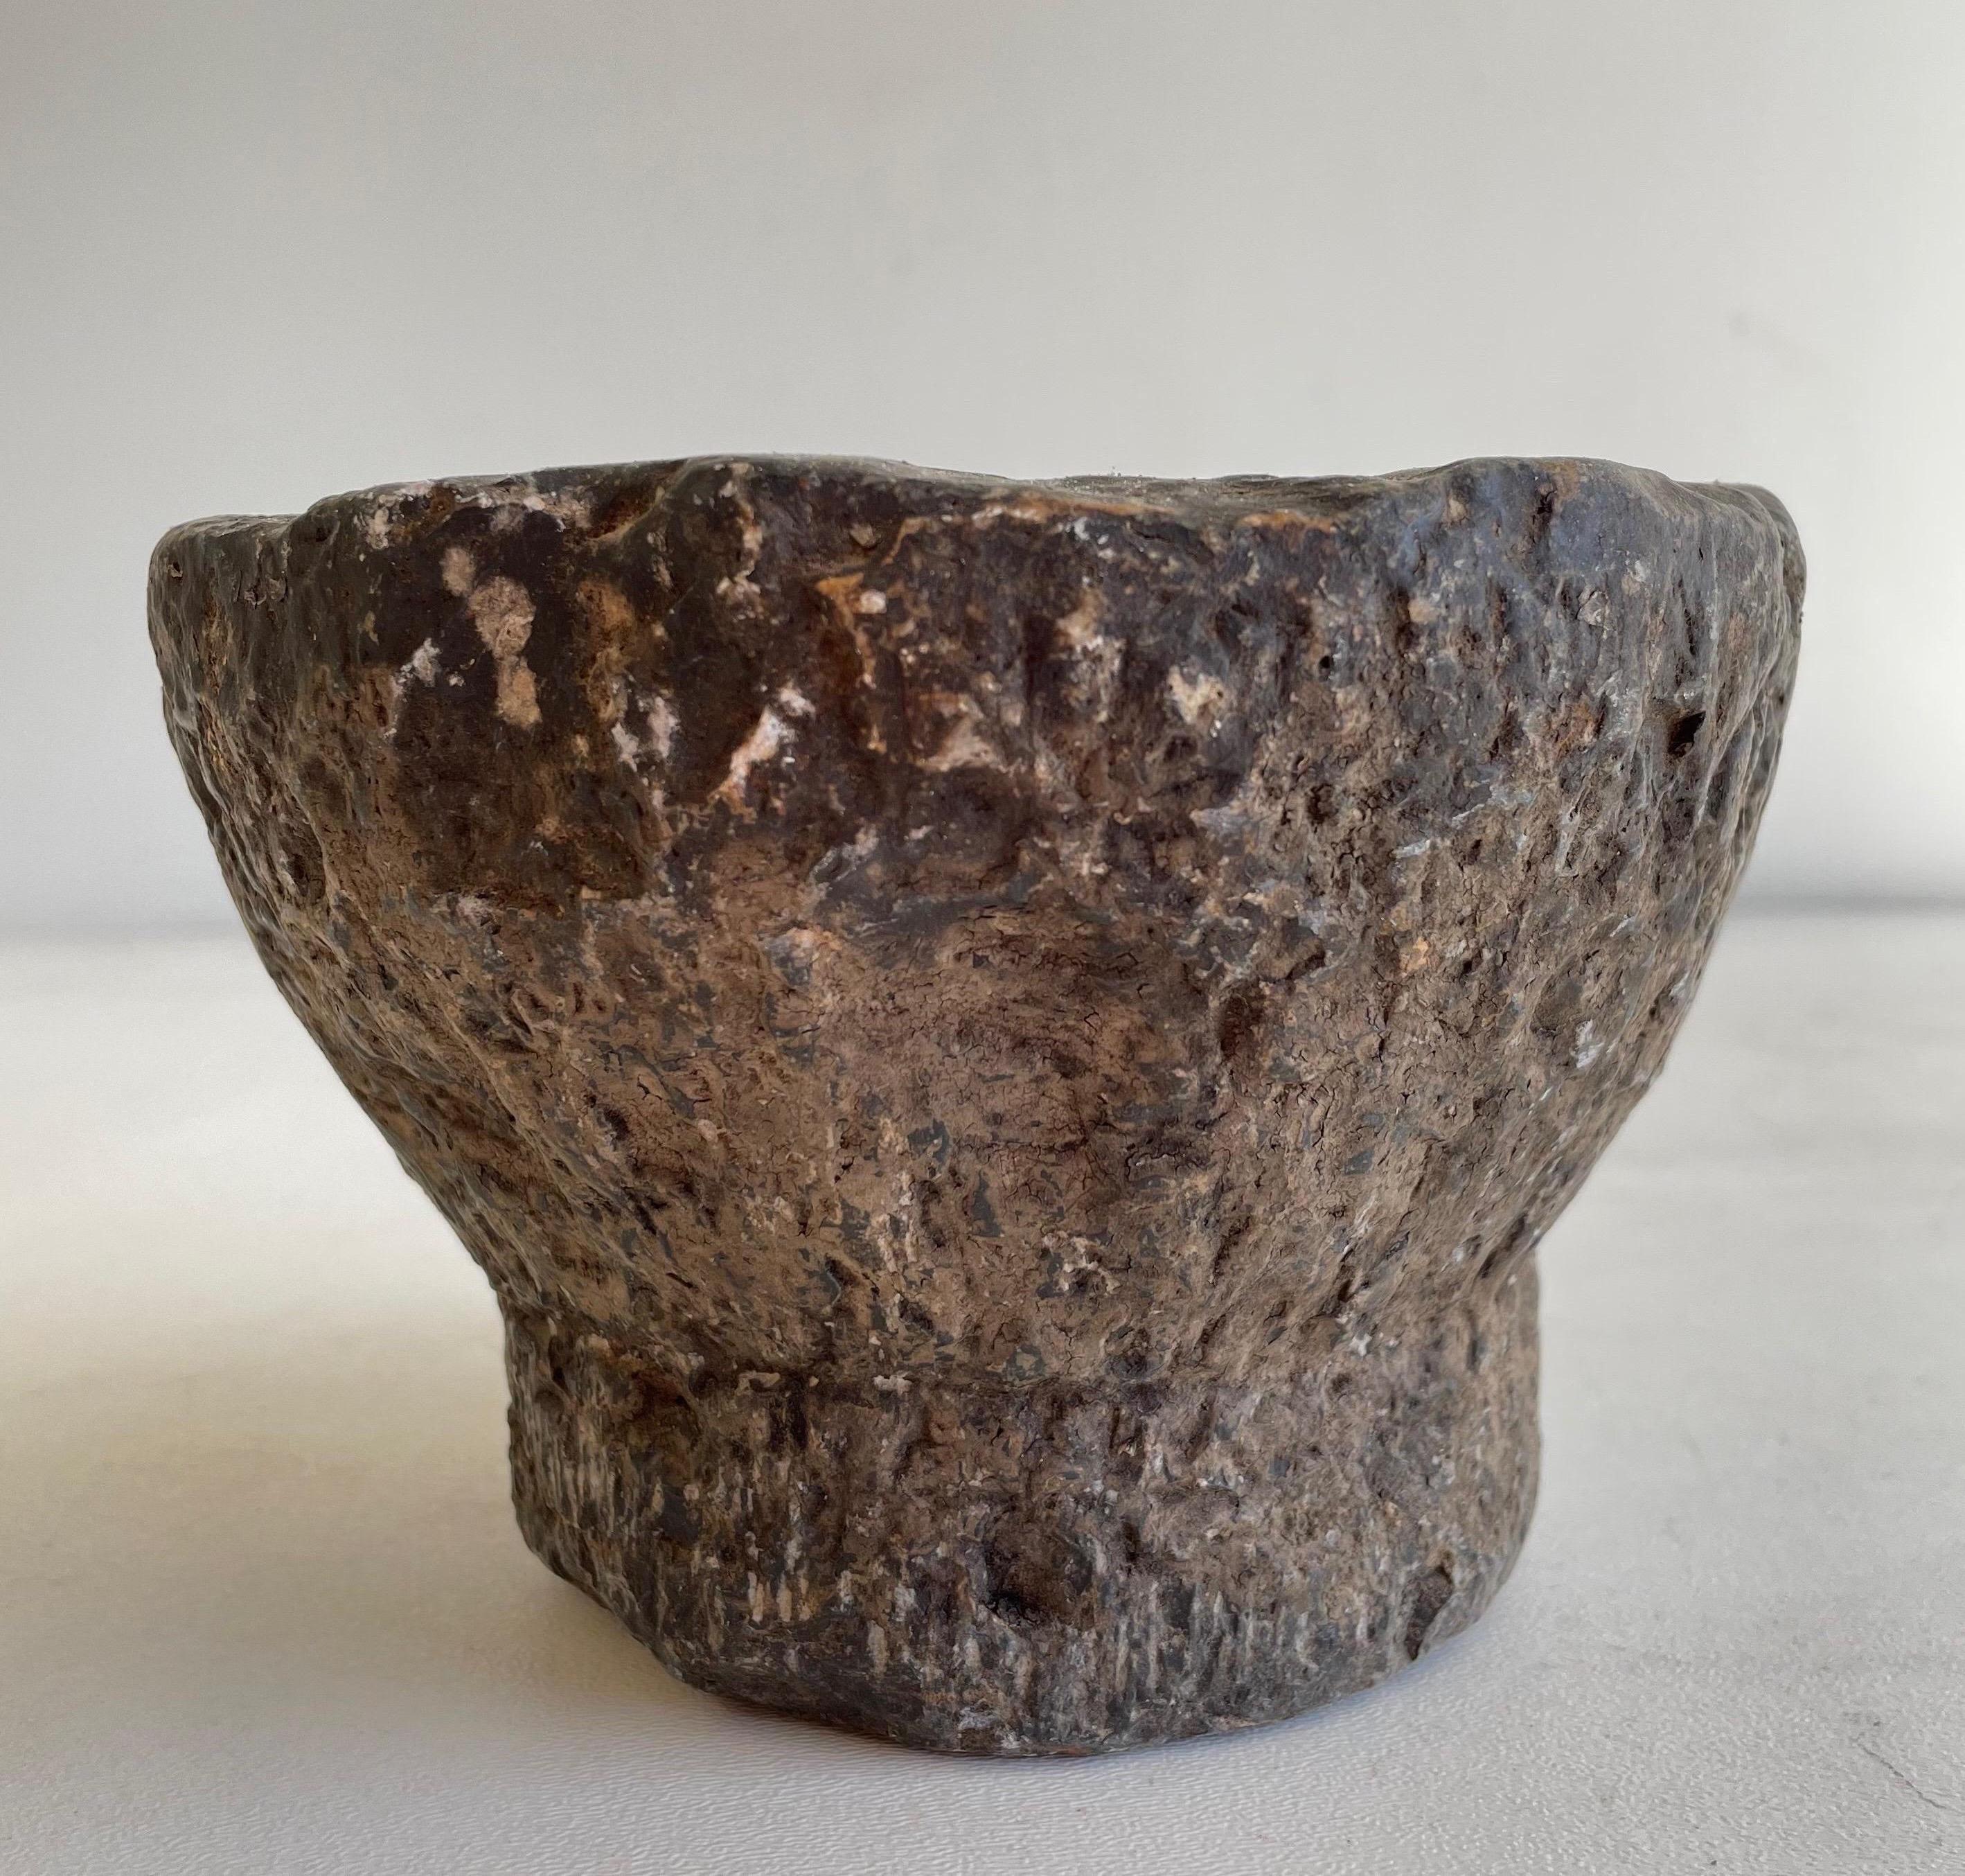 Ancien bol à mortier en pierre, très bel objet décoratif, ou peut être utilisé. Accessoires non inclus 
Taille : 6 1/4